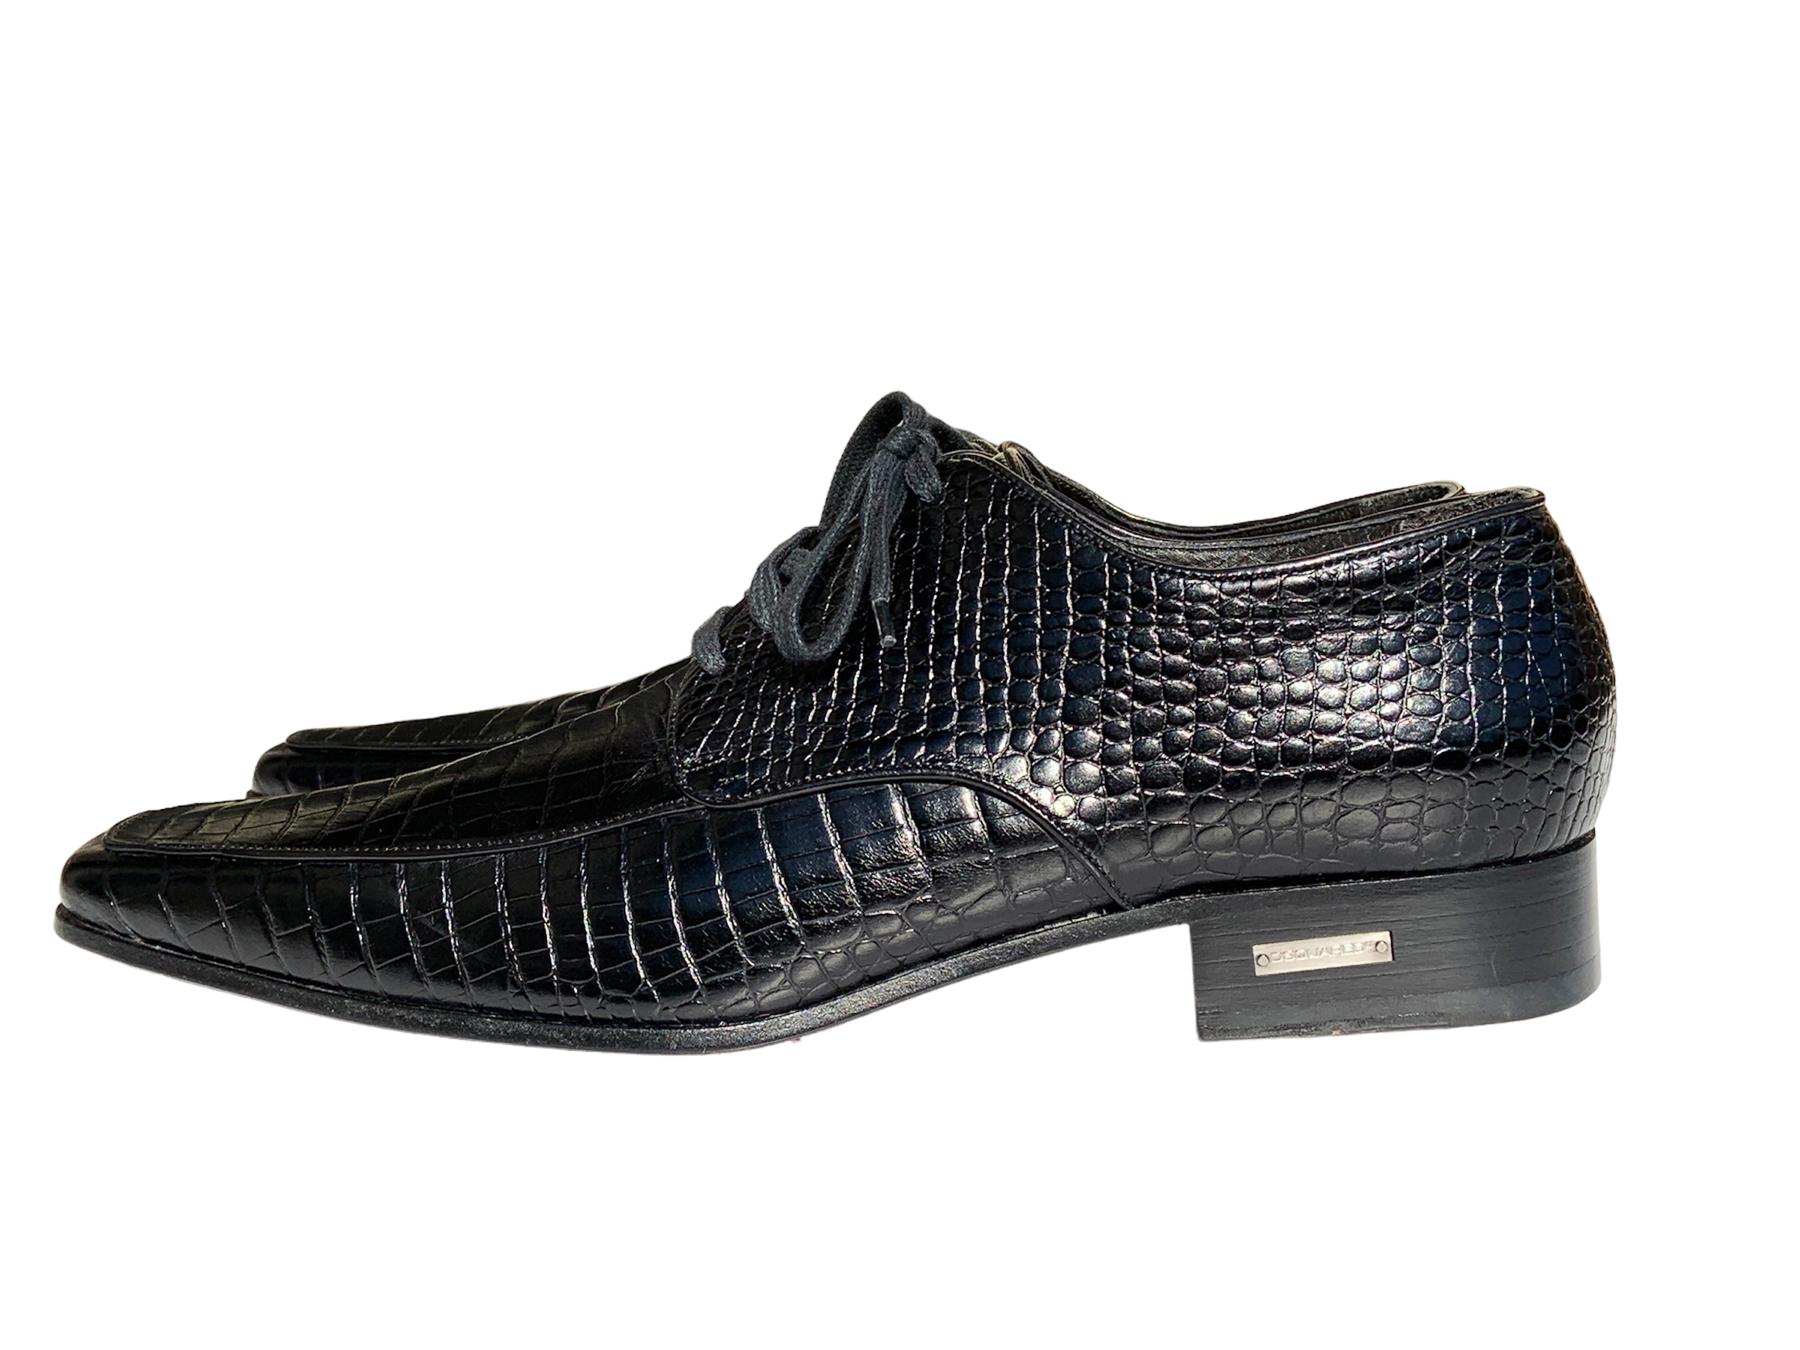 New Dsquared2 Black Crocodile Men's Lace Up Dress Shoes
Taille italienne - 43
Couleur noire, style Up&Up, semelle et semelle intérieure en cuir.
Fabriquées en Italie.
Neuf avec boîte.
Malheureusement, en raison de restrictions, ces chaussures ne